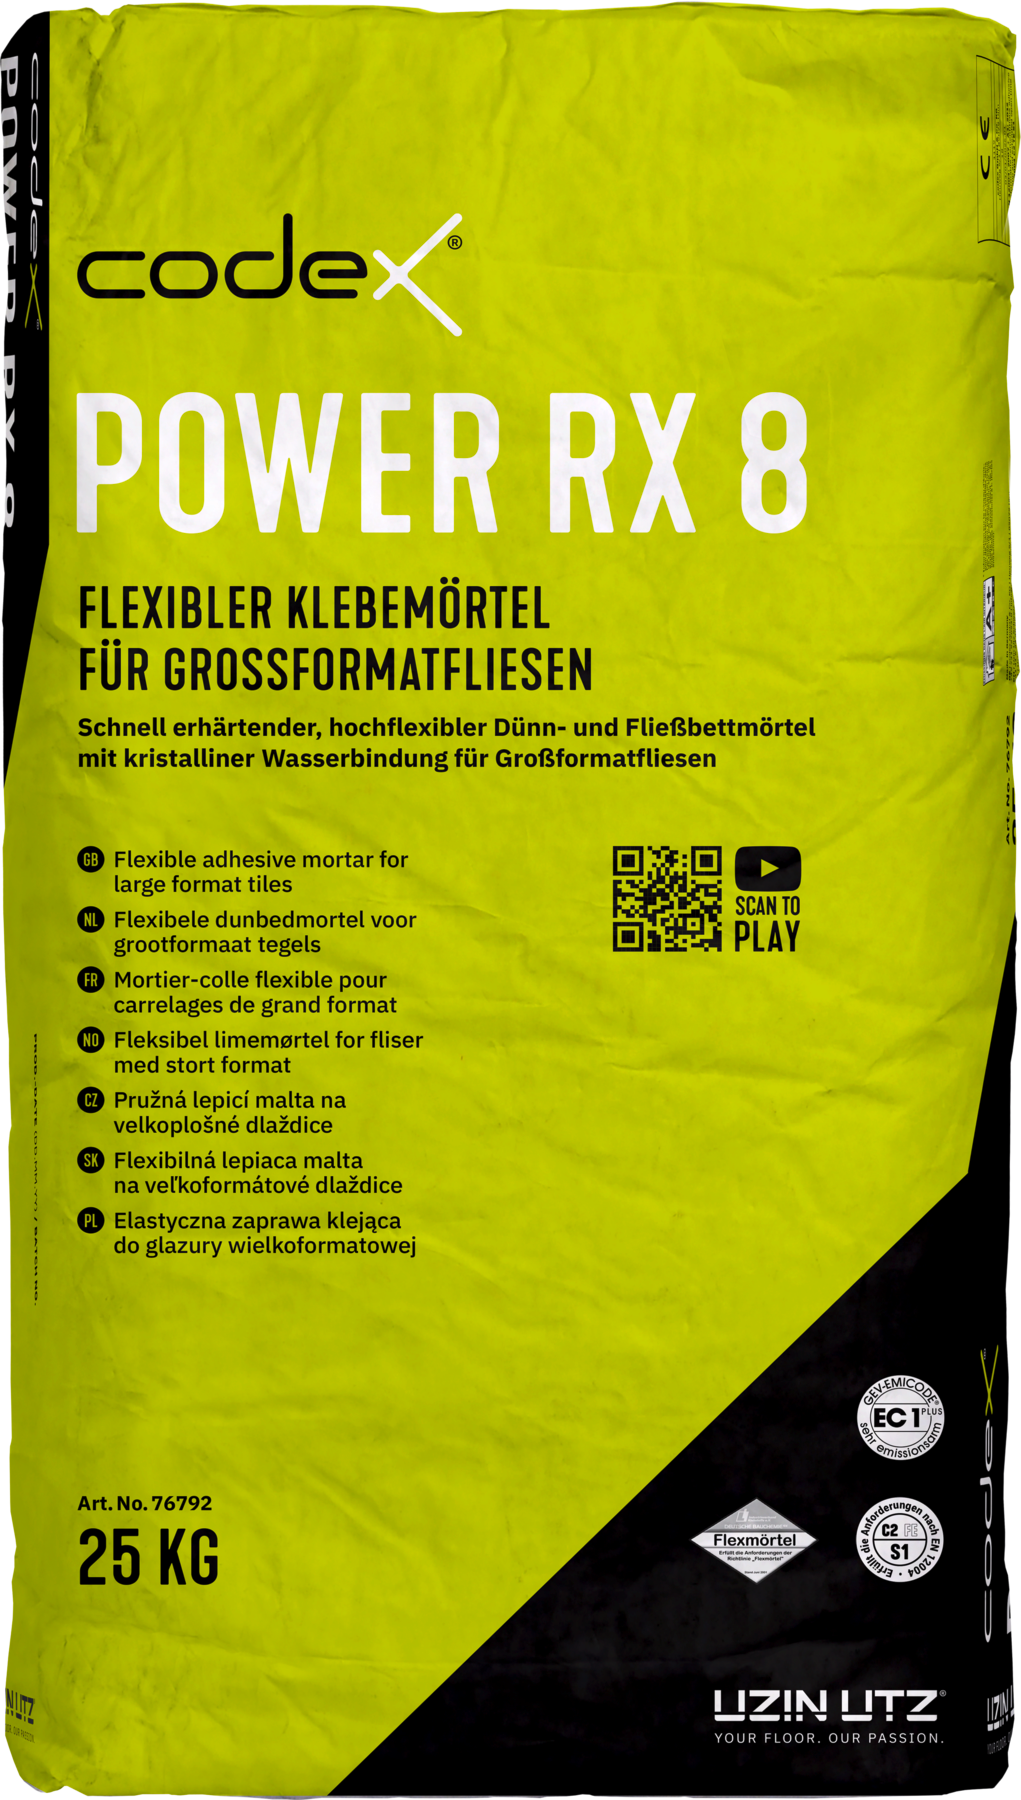 Codex Power RX 8 25 kg Flexibler Klebemörtel für Großformatfliesen